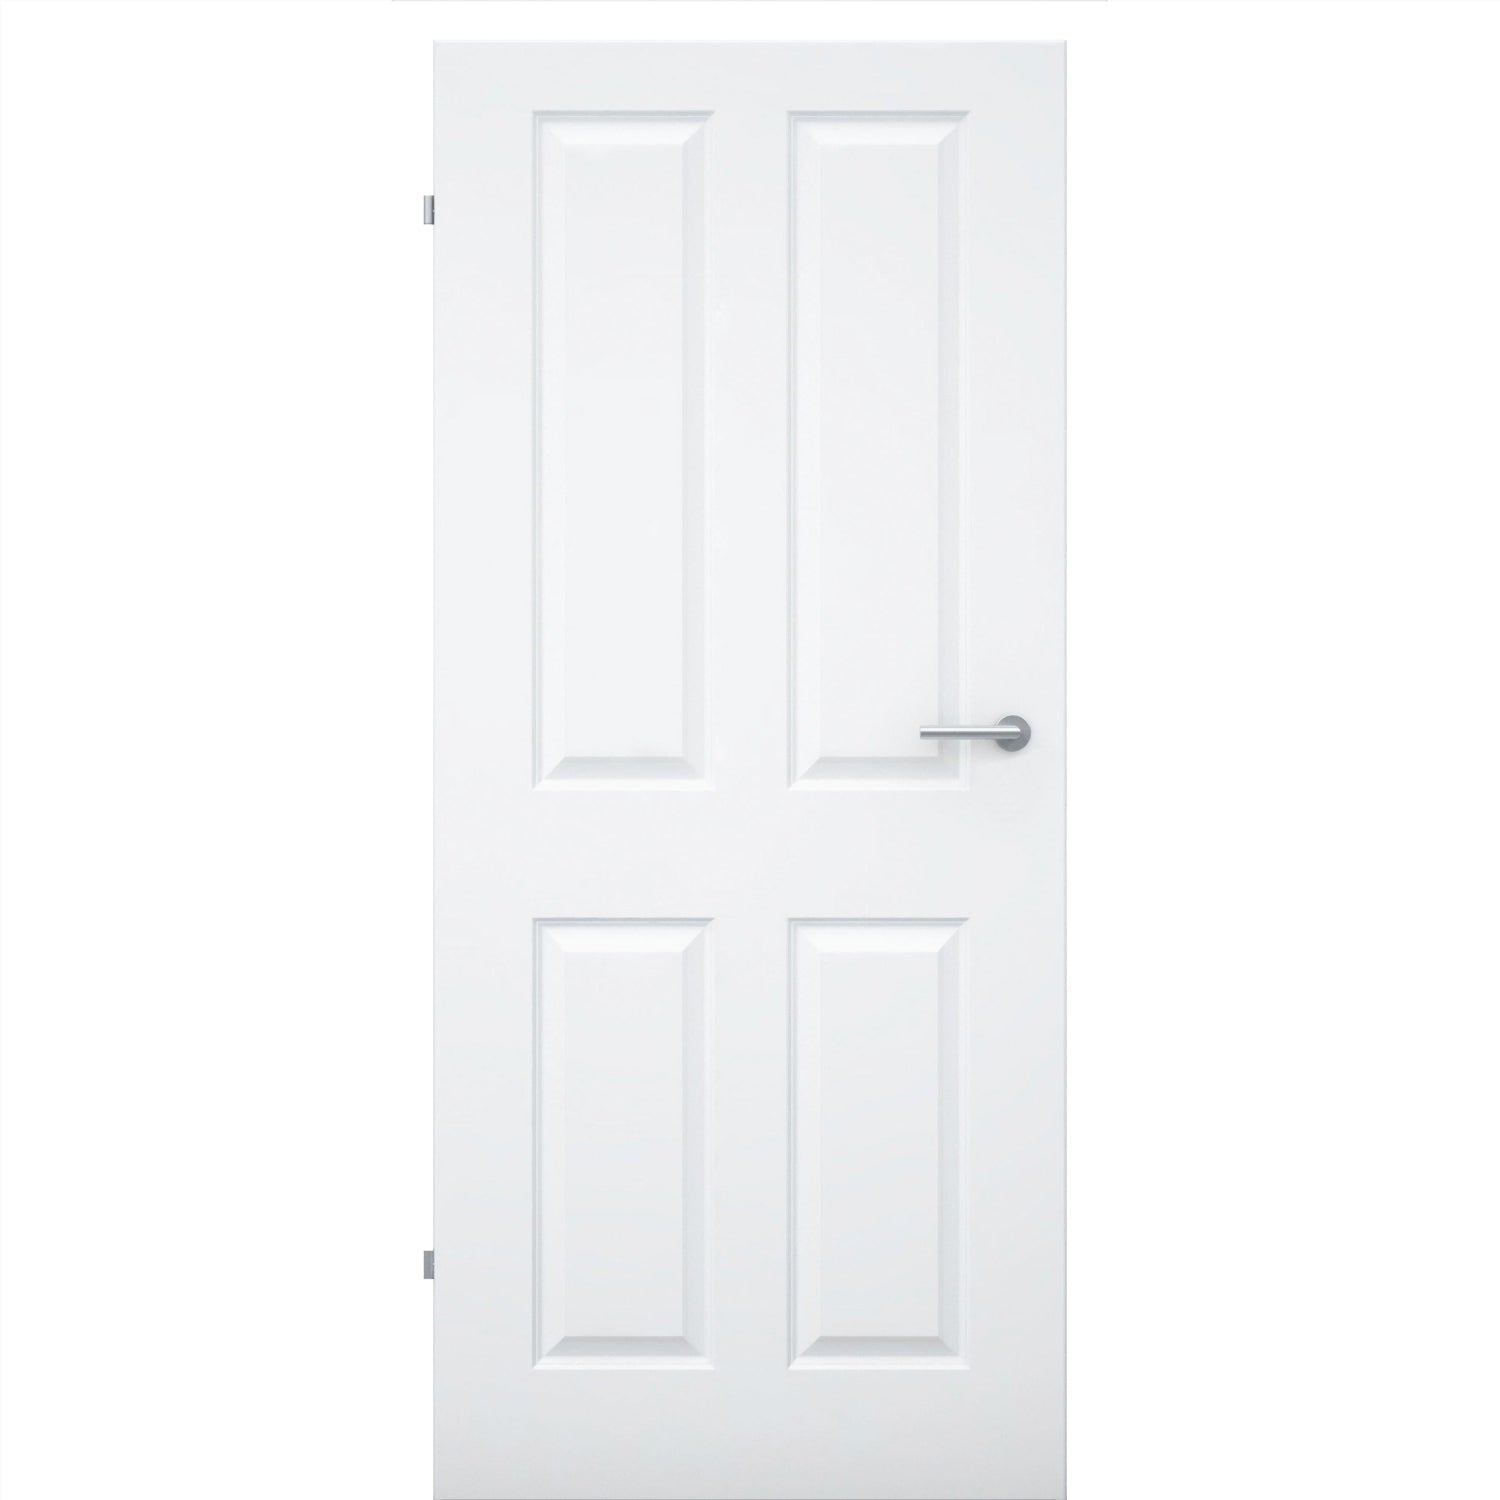 Zimmertür ohne Schlüssellochbohrung brillant-weiß 4 Kassetten Designkante - Modell Stiltür K43